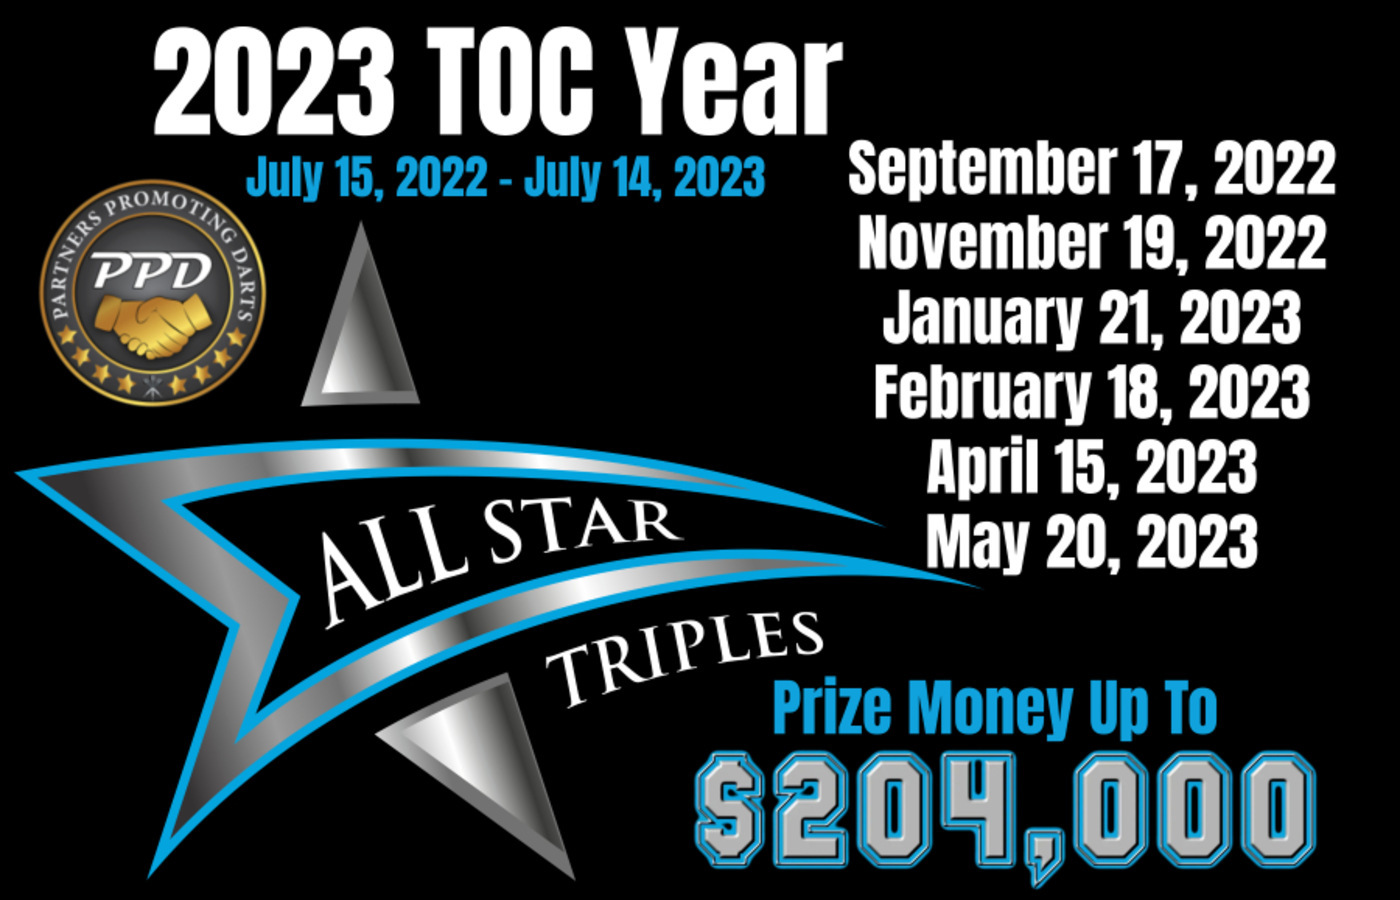 Feb 18, 2023 - All Star Triples Image